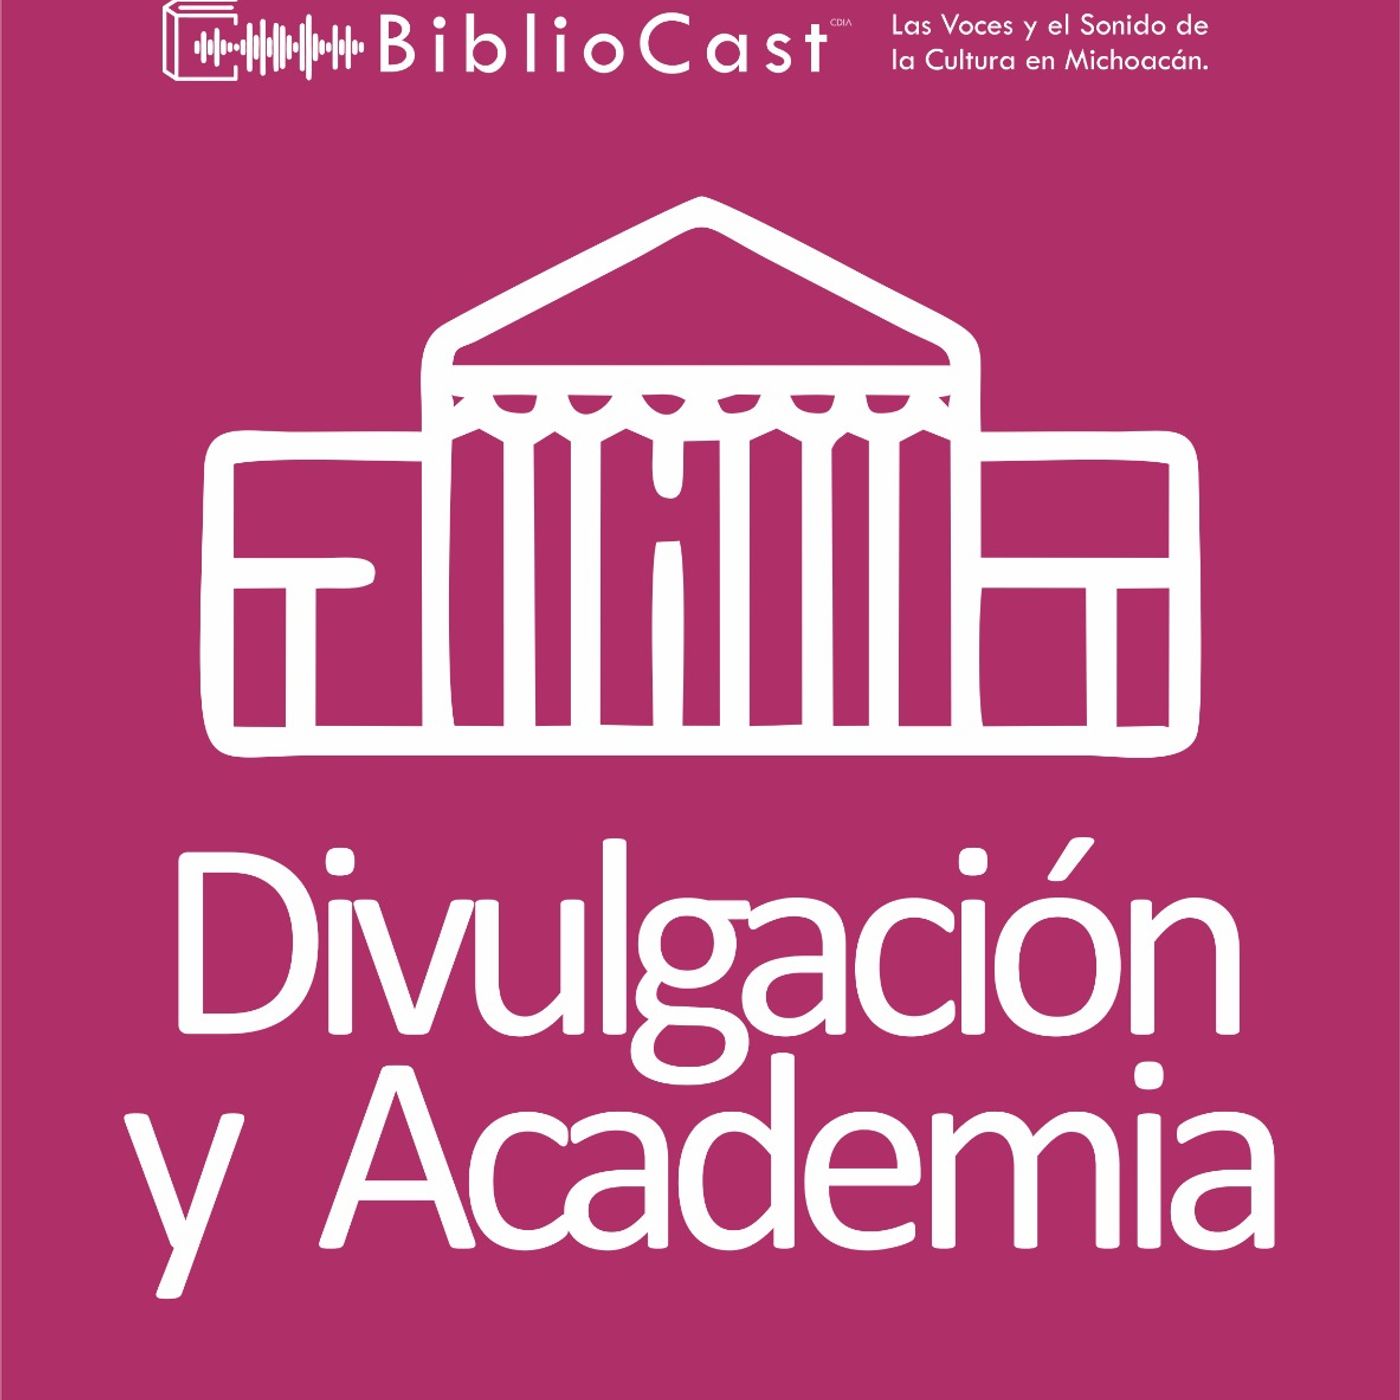 BiblioCast - Divulgación y Academia